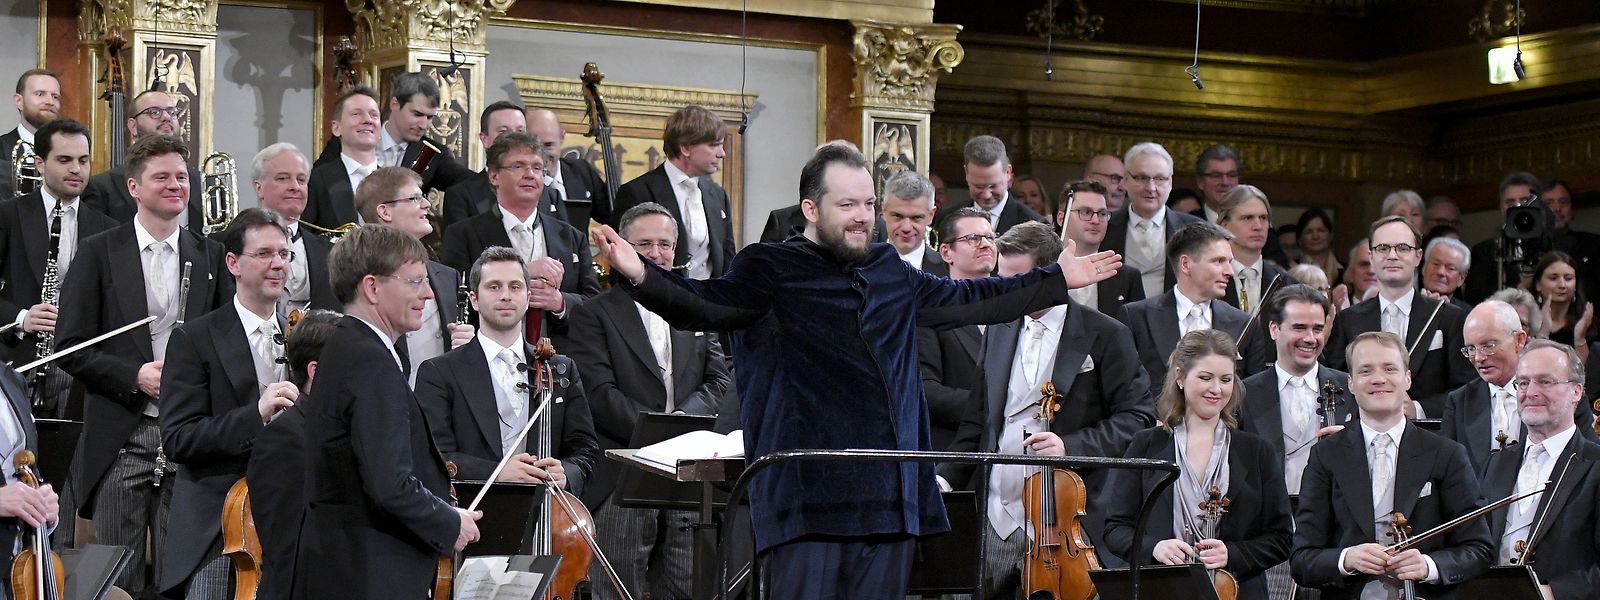 Andris Nelsons (M), Dirigent aus Lettland, steht nach dem Neujahrskonzert der Wiener Philharmoniker im Wiener Musikverein vor dem Orchester und bedankt sich beim Publikum. 